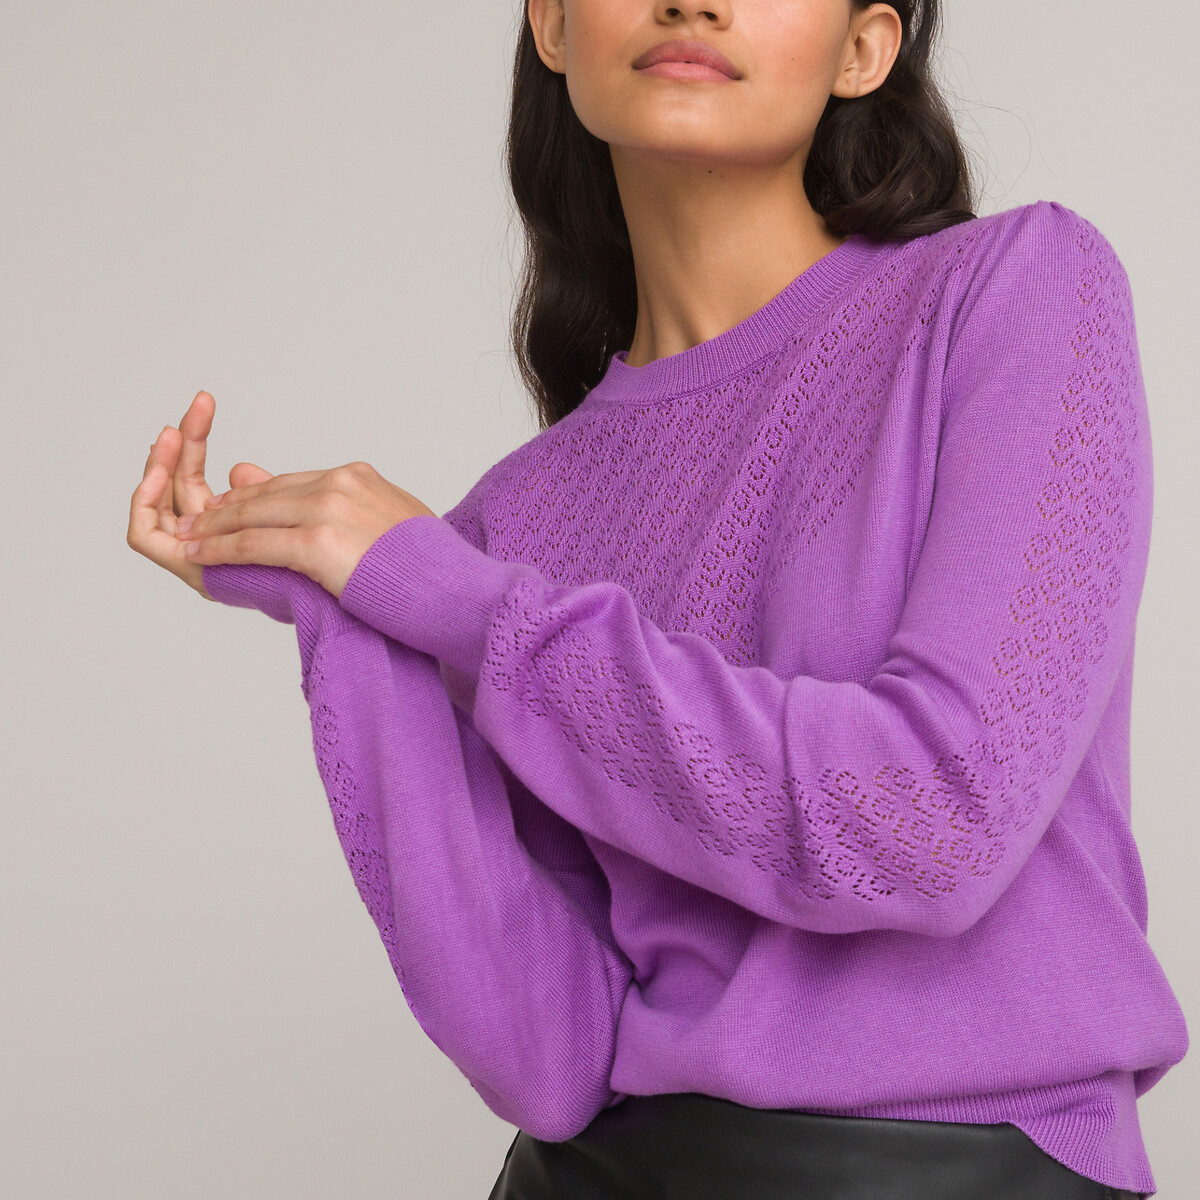 Пуловер с круглым вырезом из трикотажа пуантель S фиолетовый пуловер тельняшка из трикотажа пуантель сделано в европе xxl синий